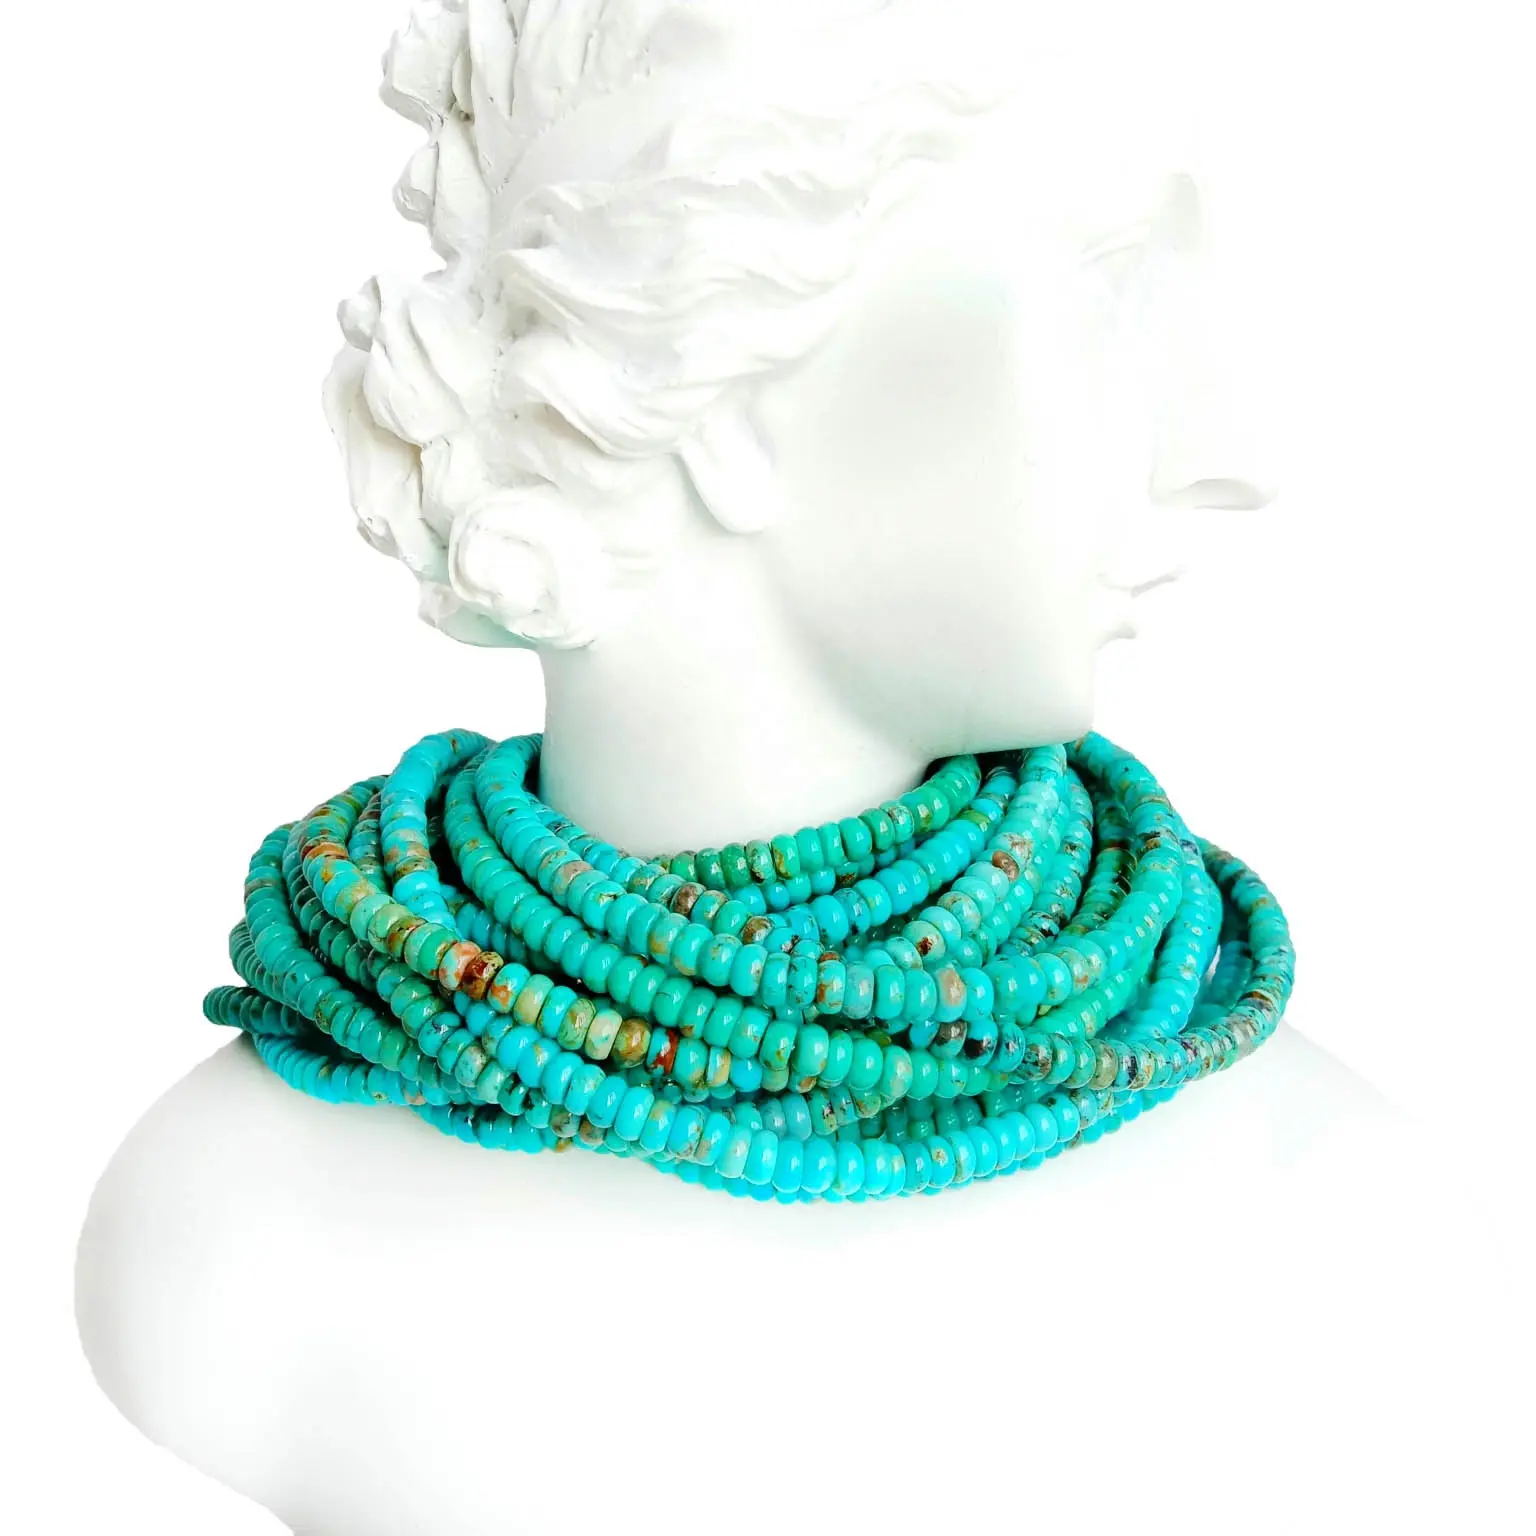 Manik-manik Turquoise Alami Rondelle Bentuk Longgar Batu Permata Spacer Beads untuk DIY Membuat Perhiasan & Desain 16 "Untai Penuh